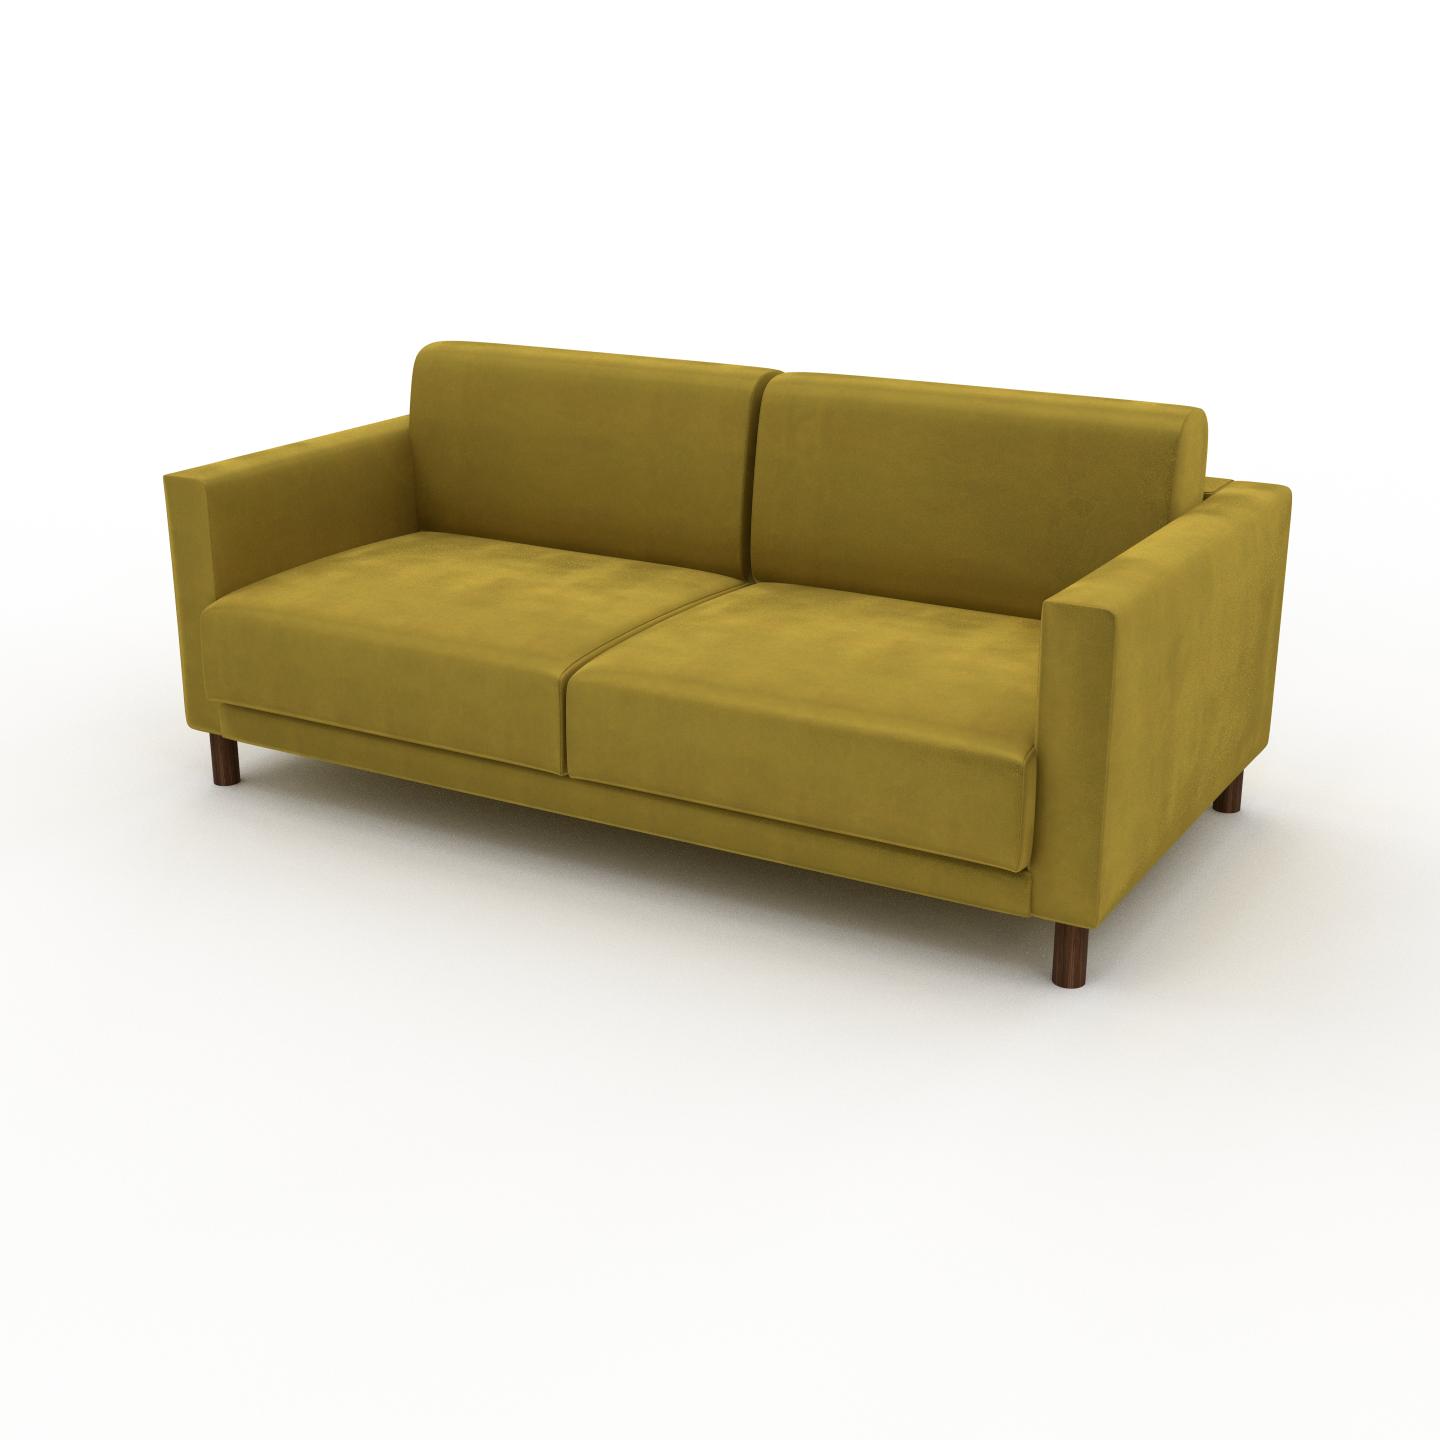 MYCS Sofa 2-Sitzer Samt Rapsgelb Samt - Elegantes, gemütliches 2-Sitzer Sofa: Hochwertige Qualität, einzigartiges Design - 184 x 75 x 98 cm, konfigurierbar